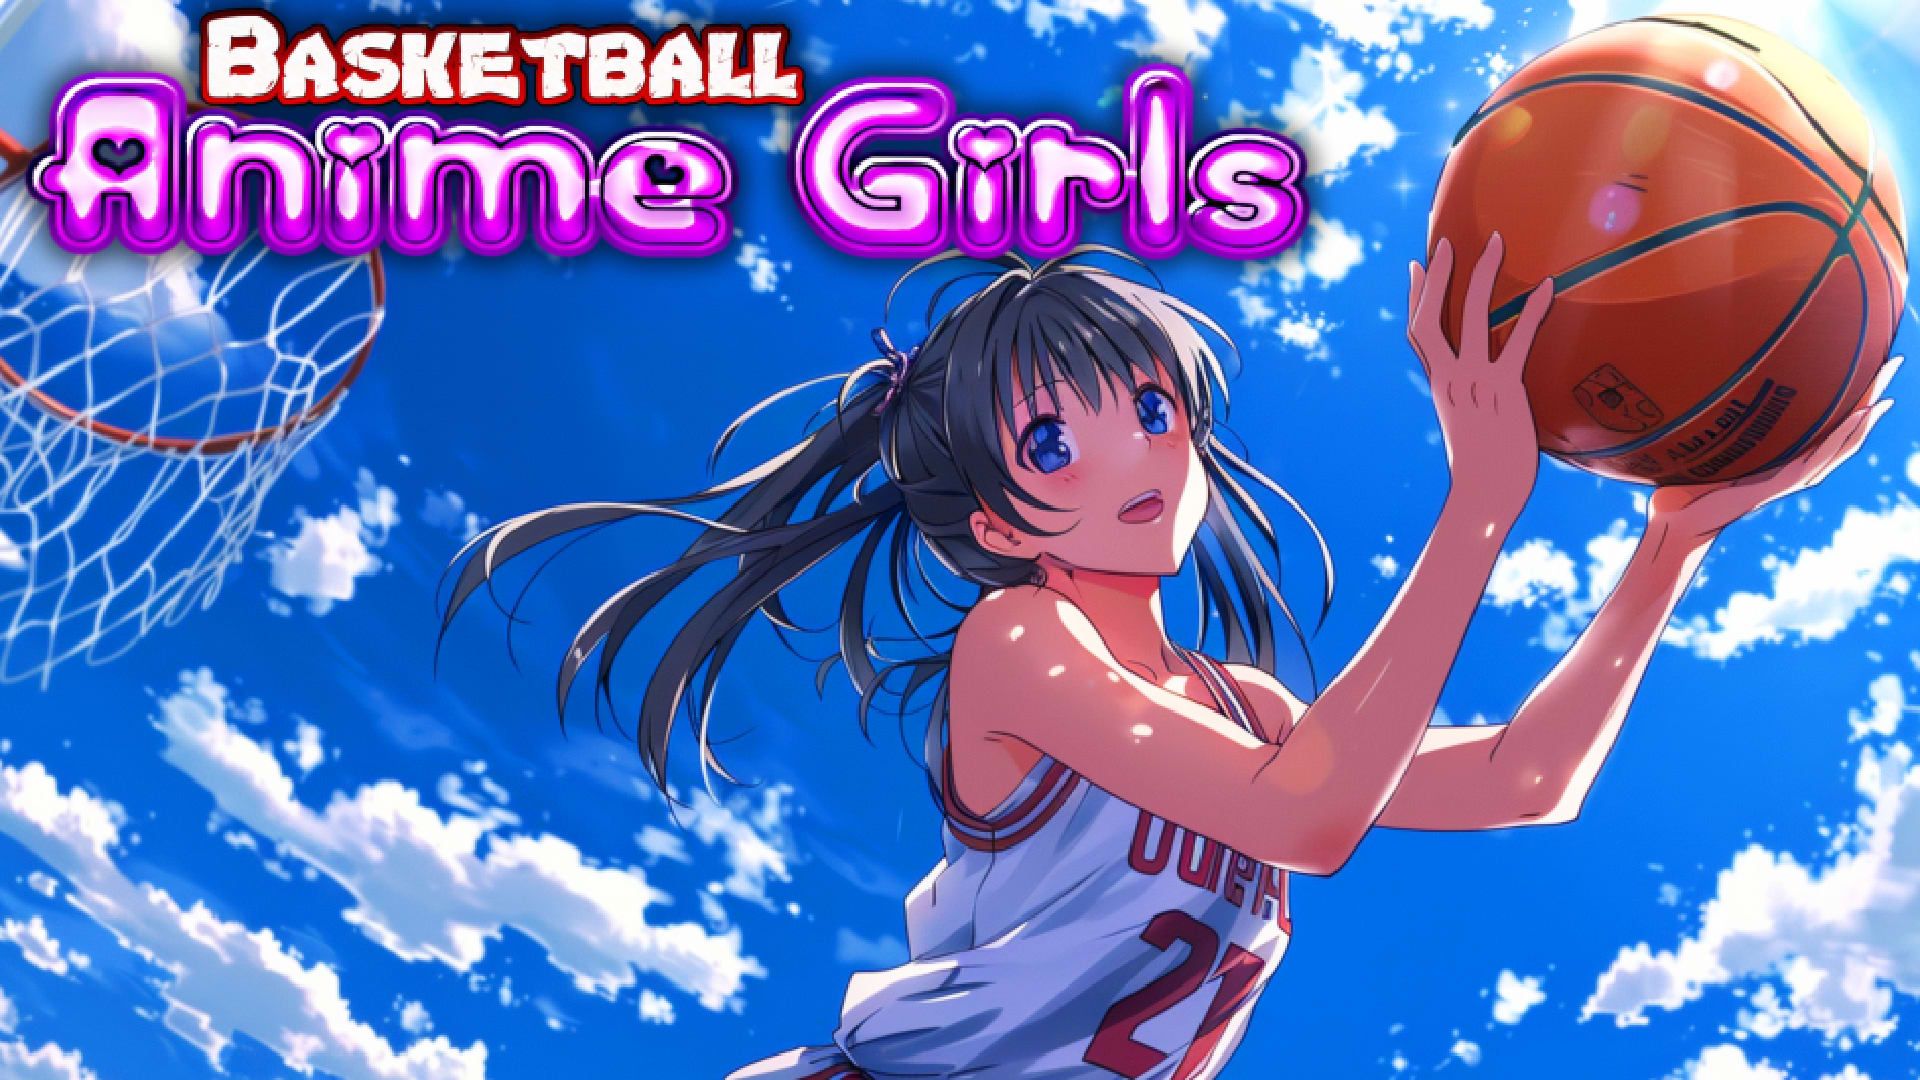 Basketball Anime Girls